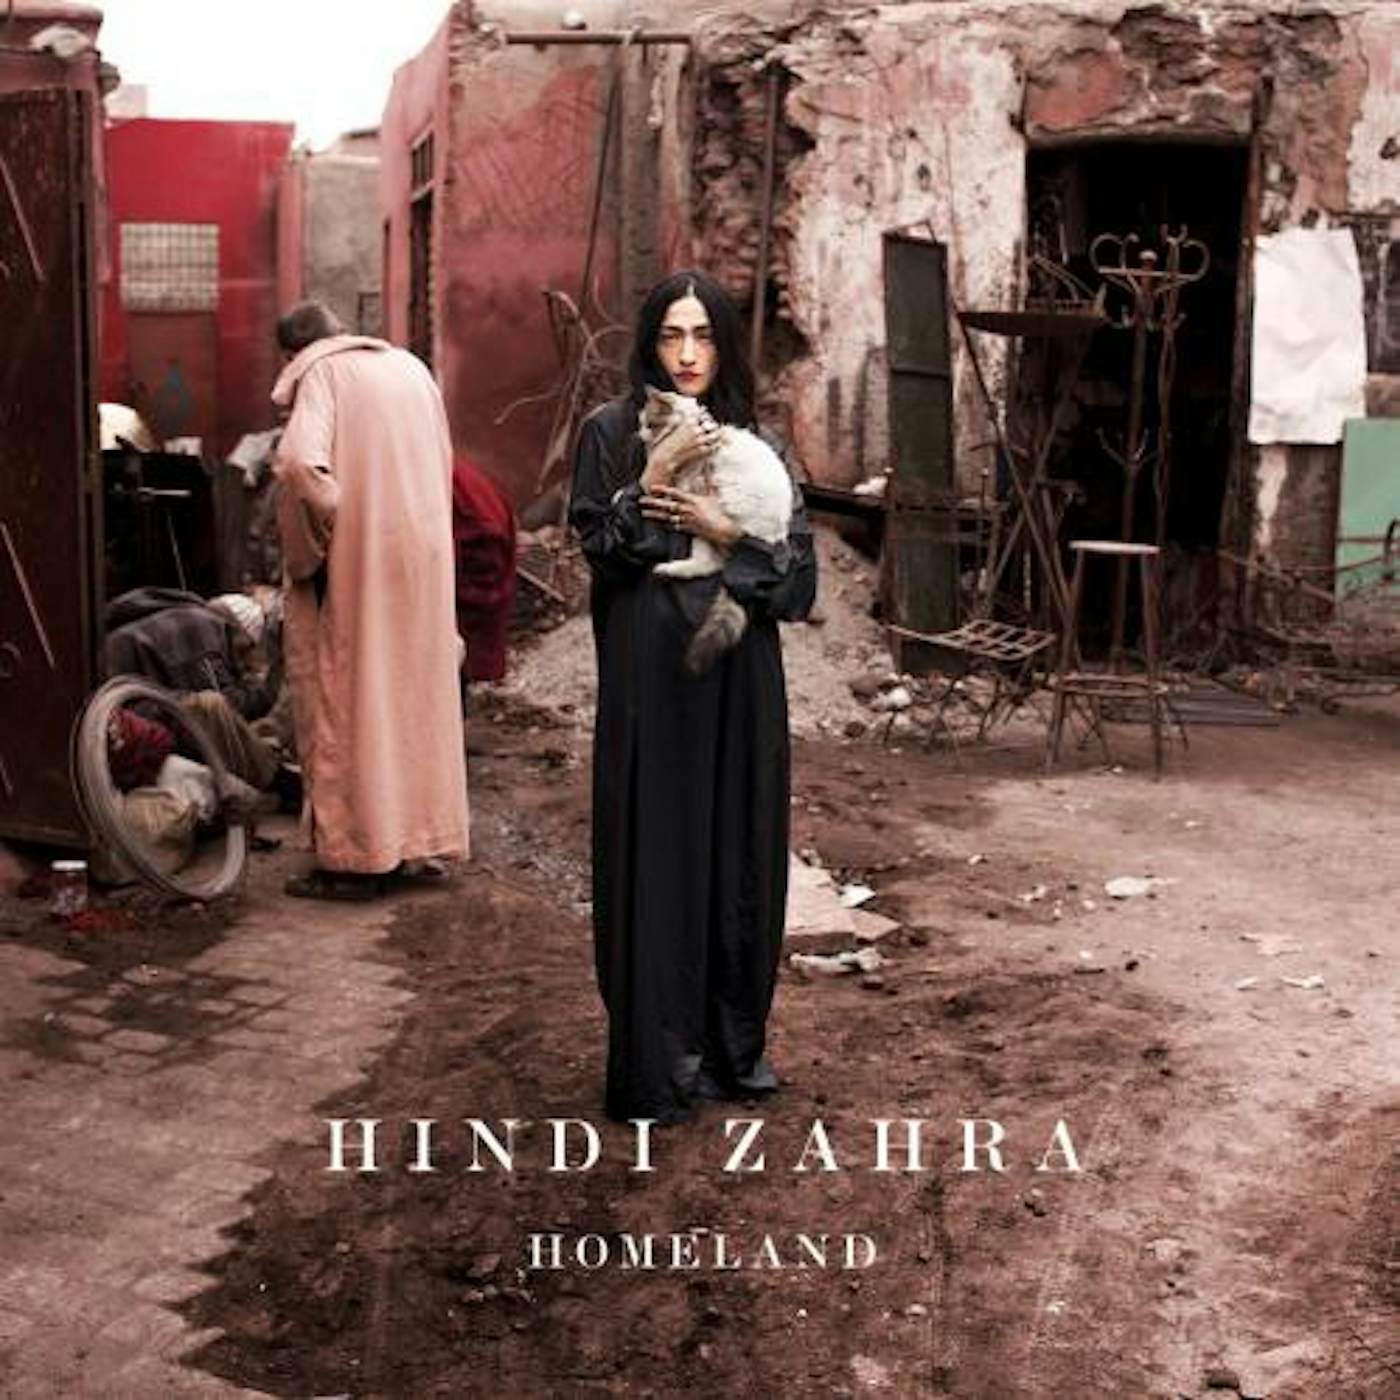 Hindi Zahra HOMELAND CD